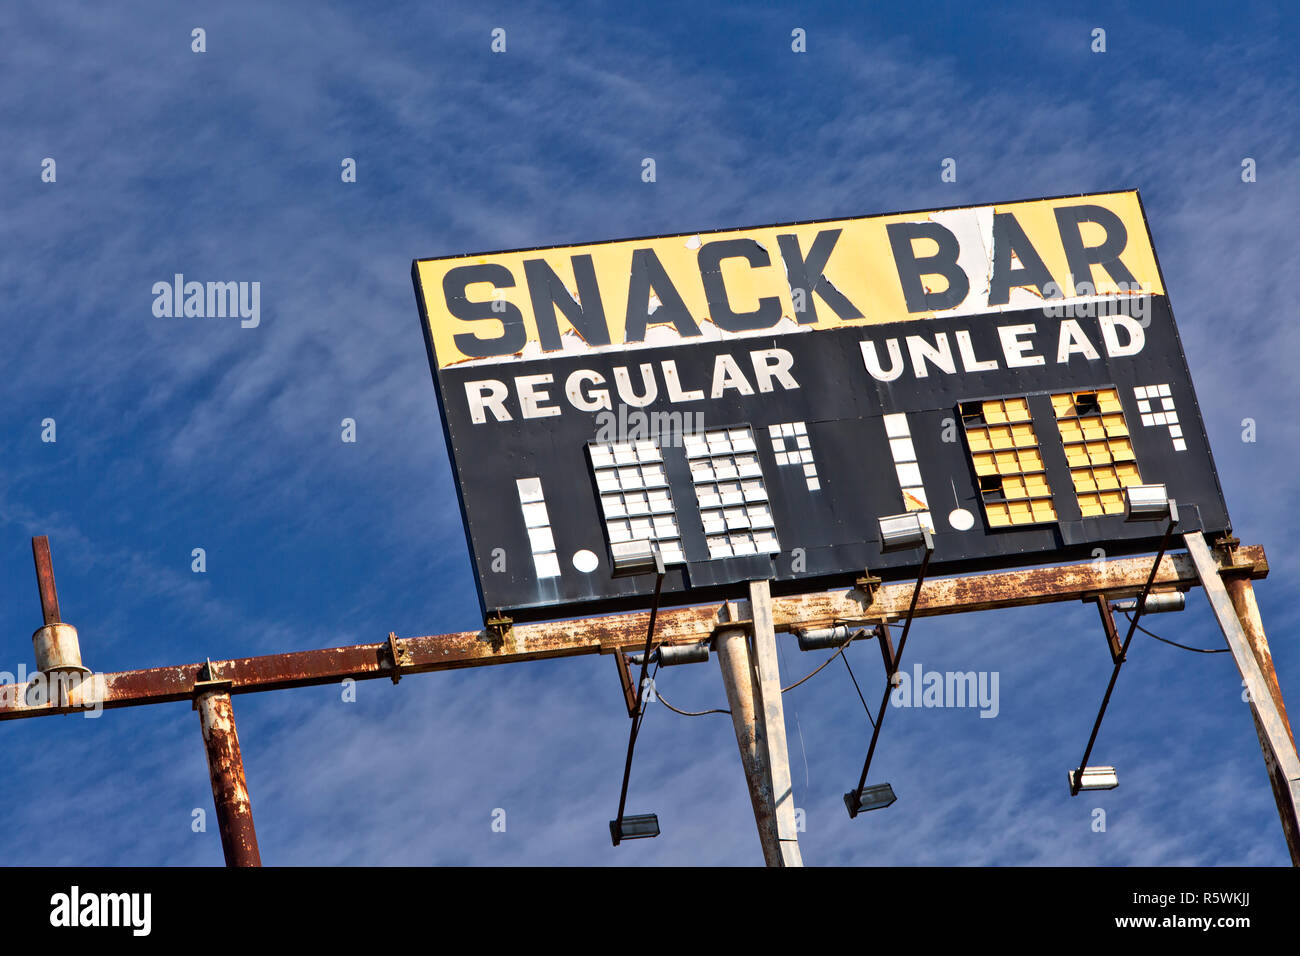 Elevata di Gas Vintage segno stazione "nack bar - Regolare - Unlead' BENZINA, metallo arrugginito telaio, contro un sparsi in cielo blu. Foto Stock